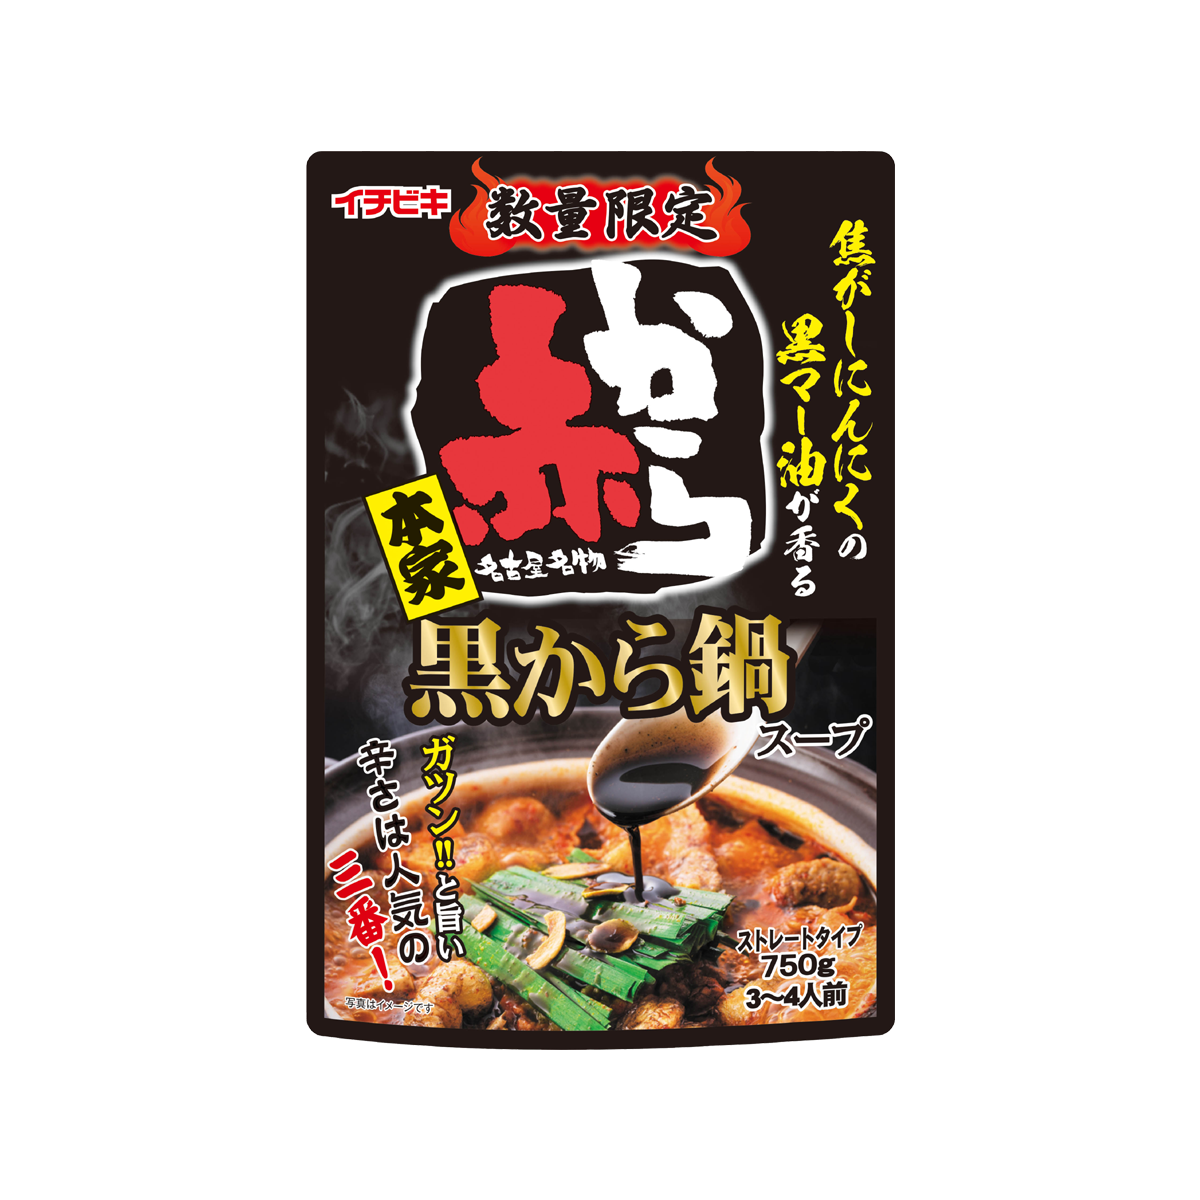 ストレート黒から鍋スープ 750g | イチビキ 公式サイト | 名古屋のみそ・しょうゆ・つゆメーカー